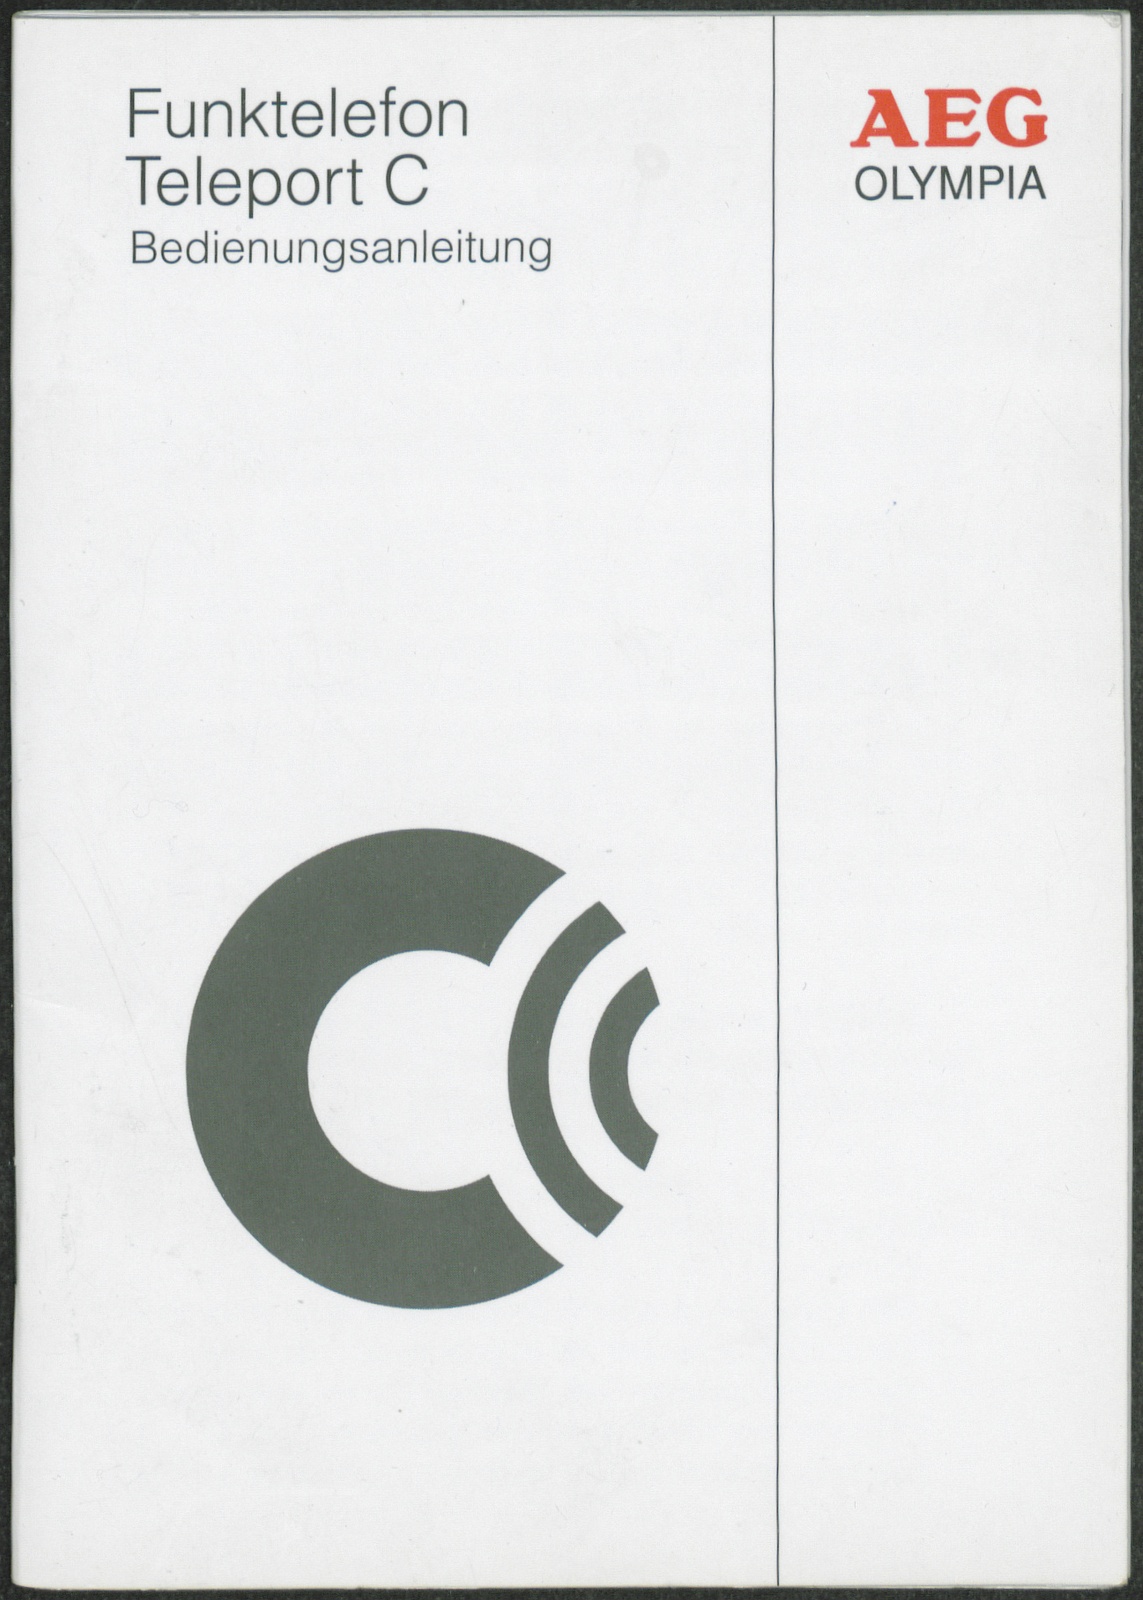 Bedienungsanleitung: Funktelefon Teleport C (Stiftung Deutsches Technikmuseum Berlin CC0)